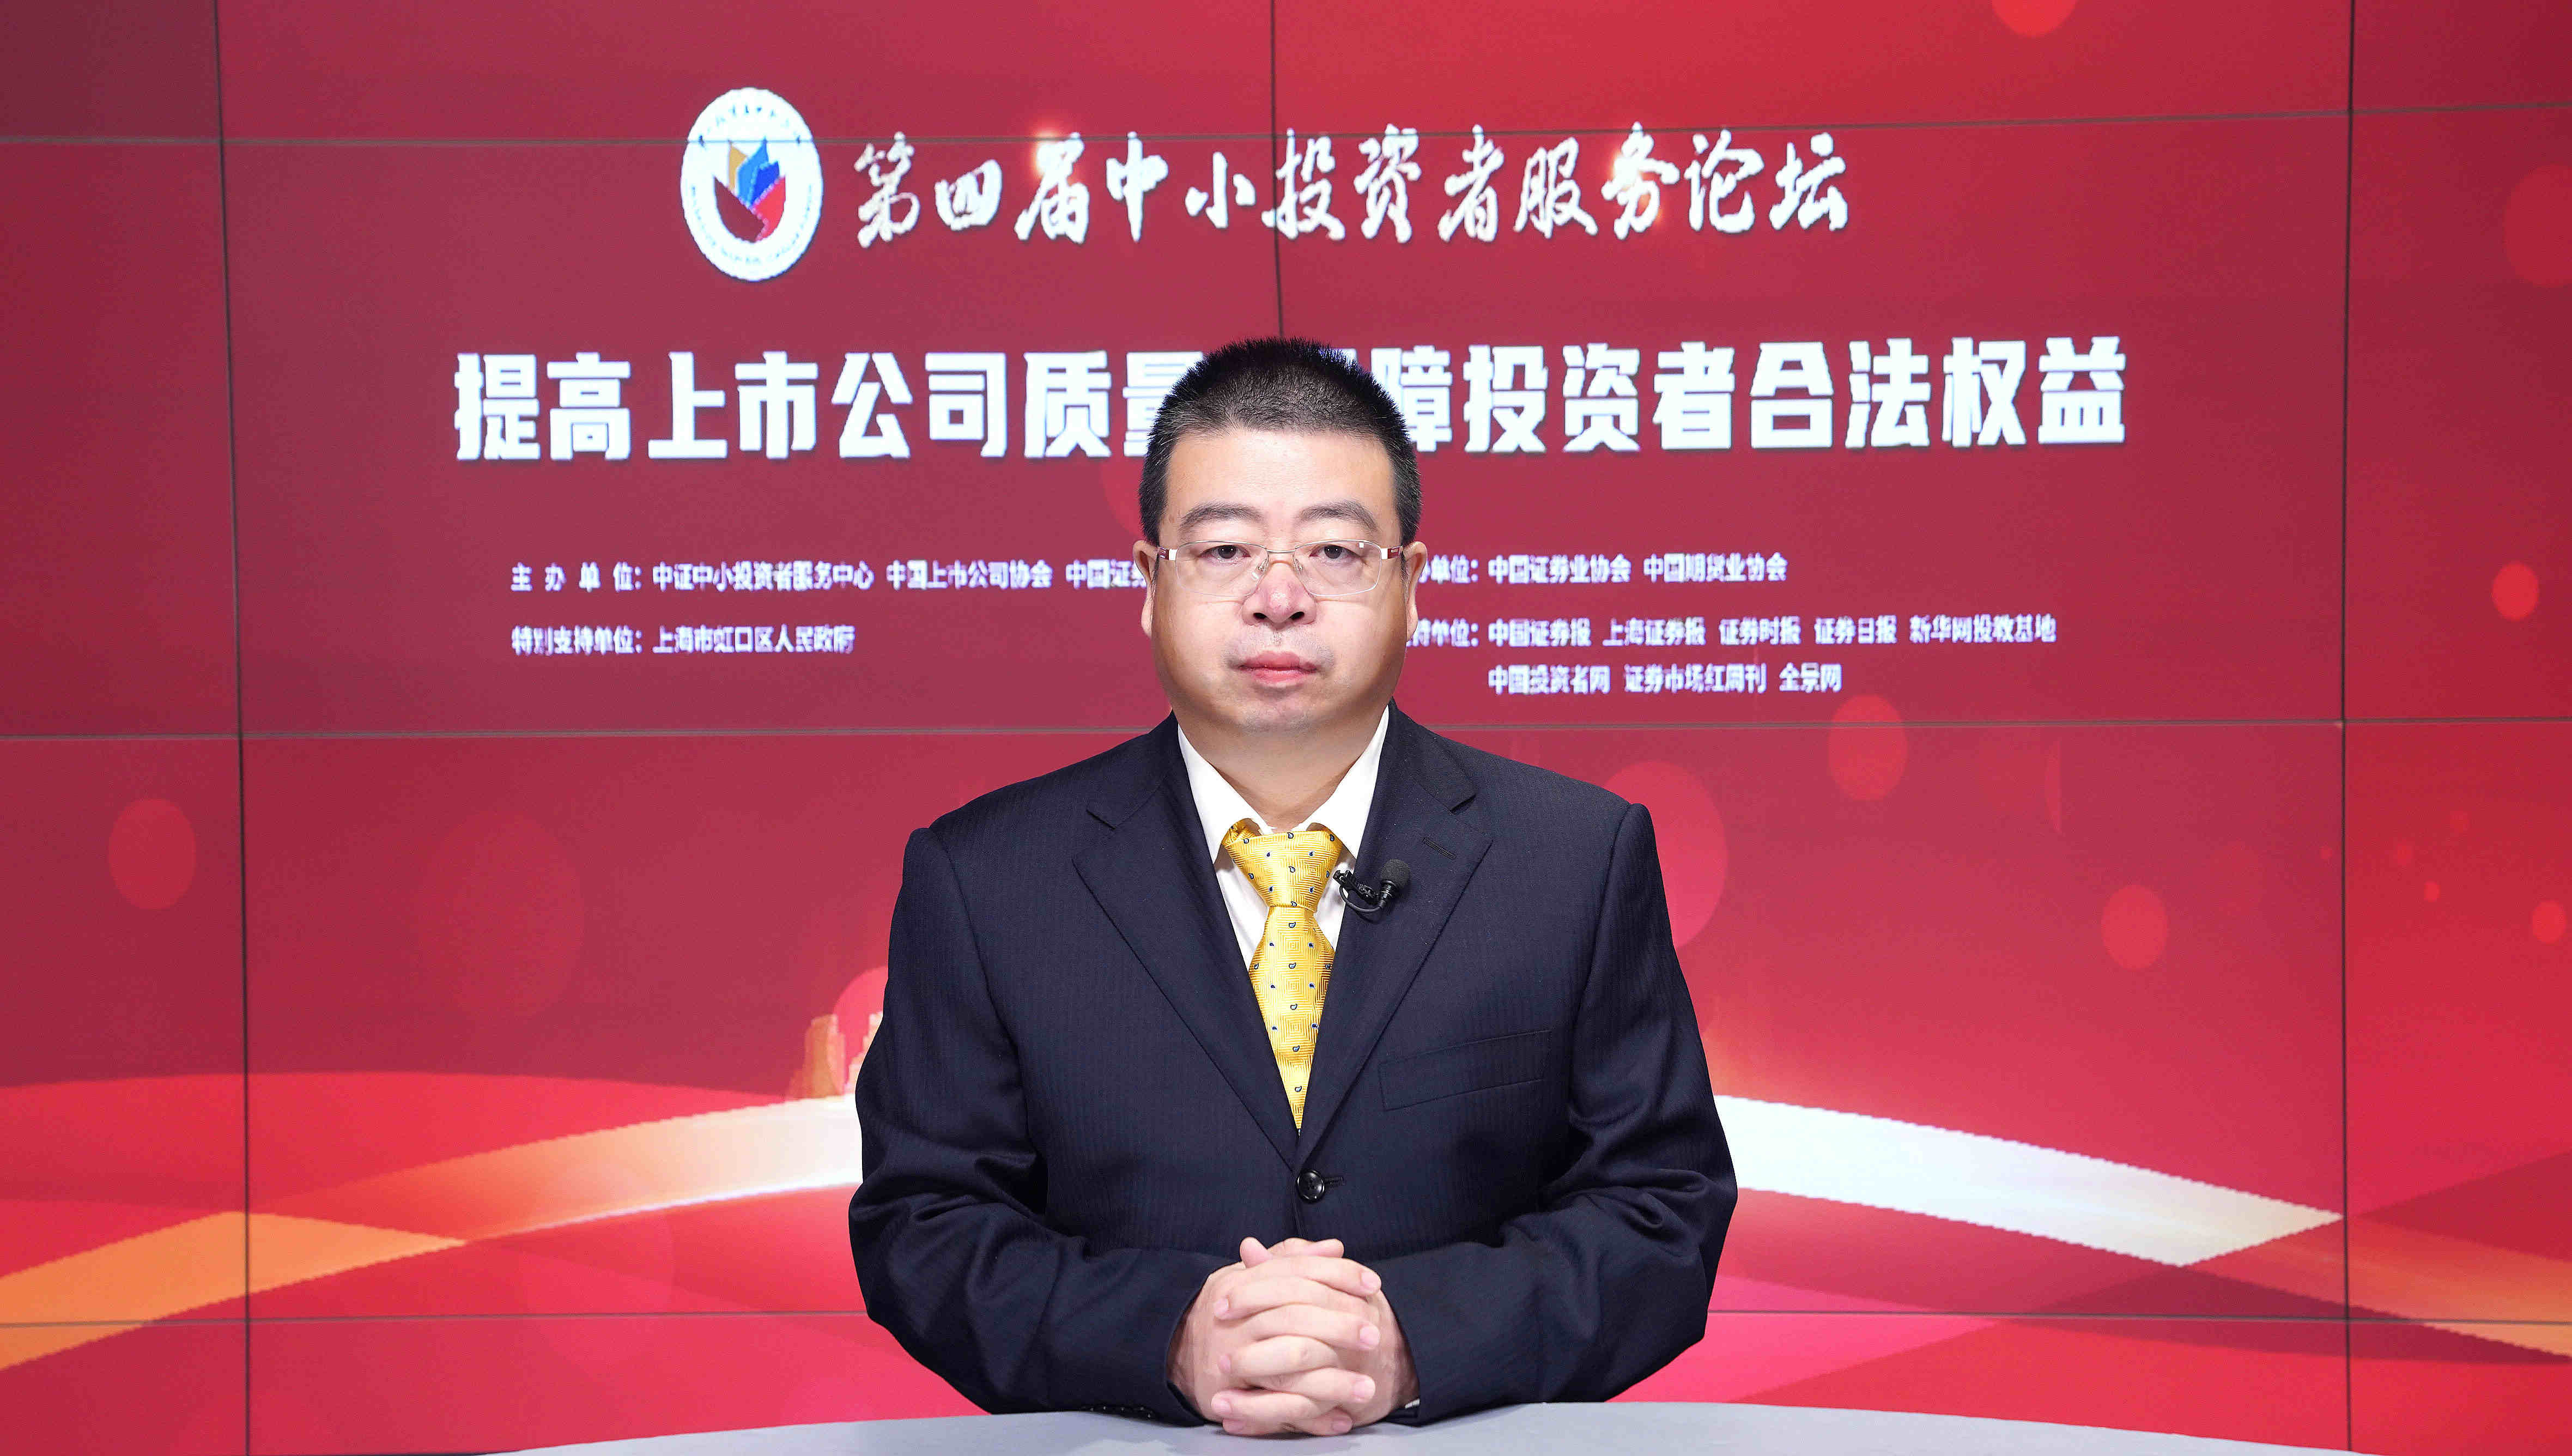 中证中小投资者服务中心董事长郭文英在第四届中小投资者服务论坛上的致辞